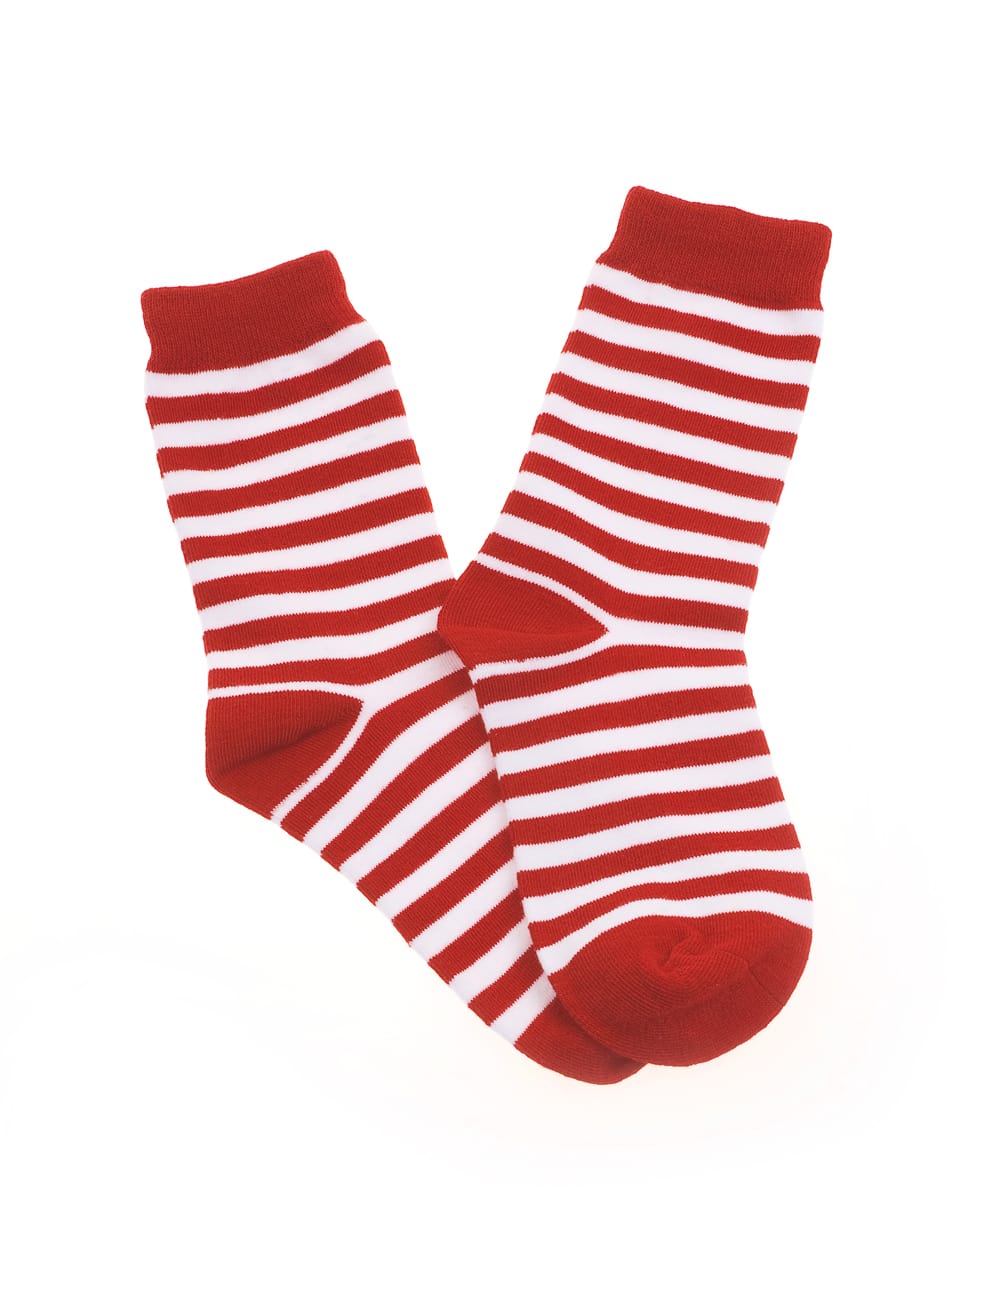 Socken gestreift rot/weiß 35-40